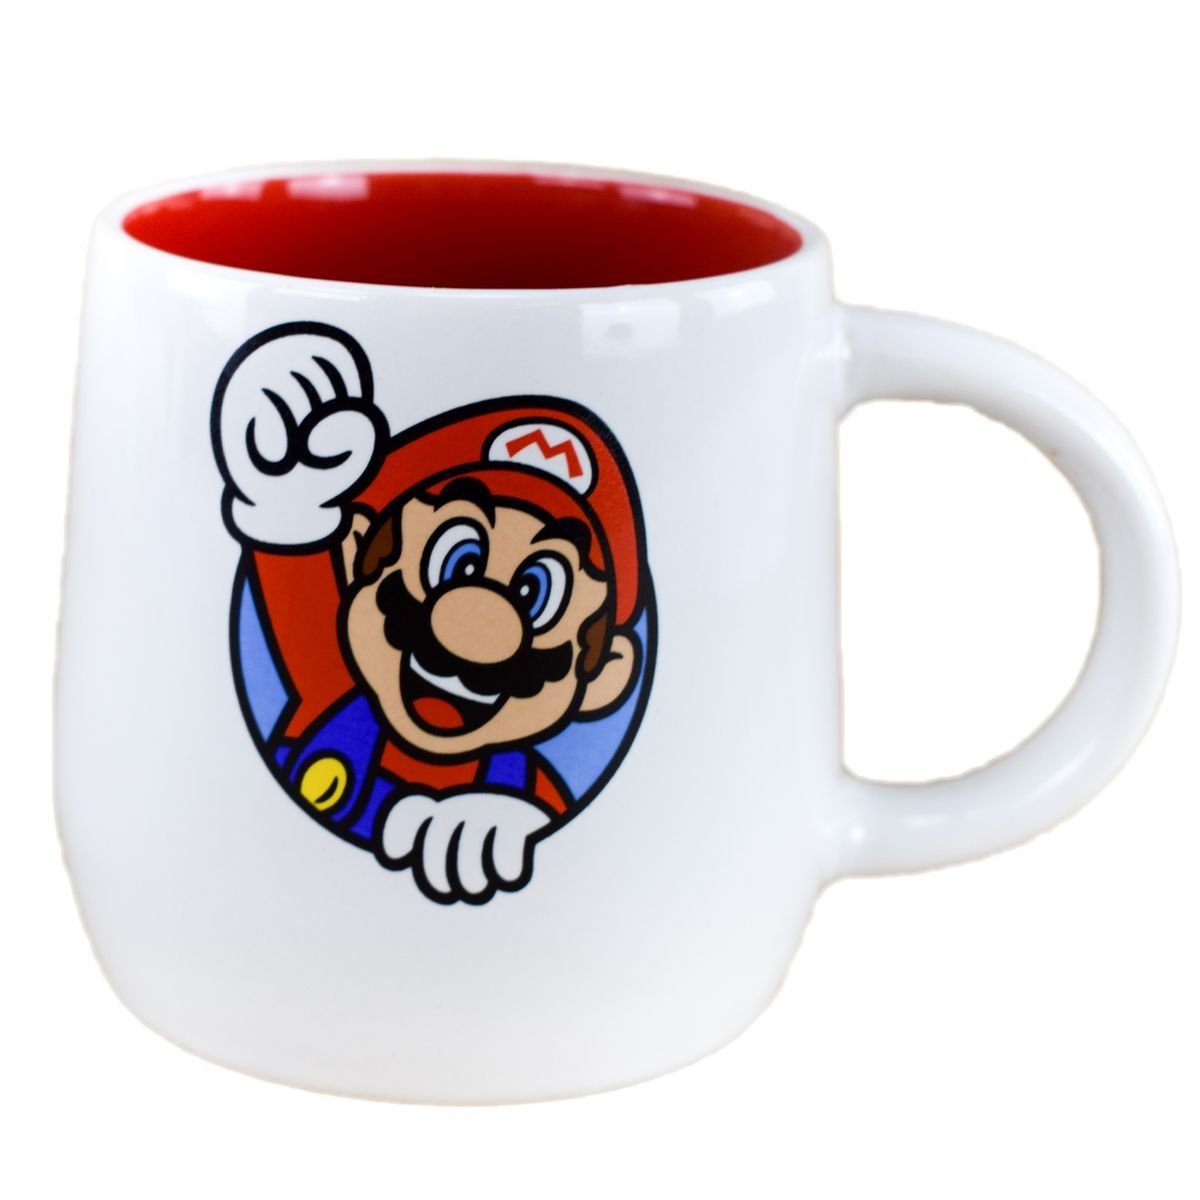 Stor Tasse Super Mario Tasse 360ml aus Keramik in Weiß / Rot Motiv & Schriftzug, Keramik, authentisches Design